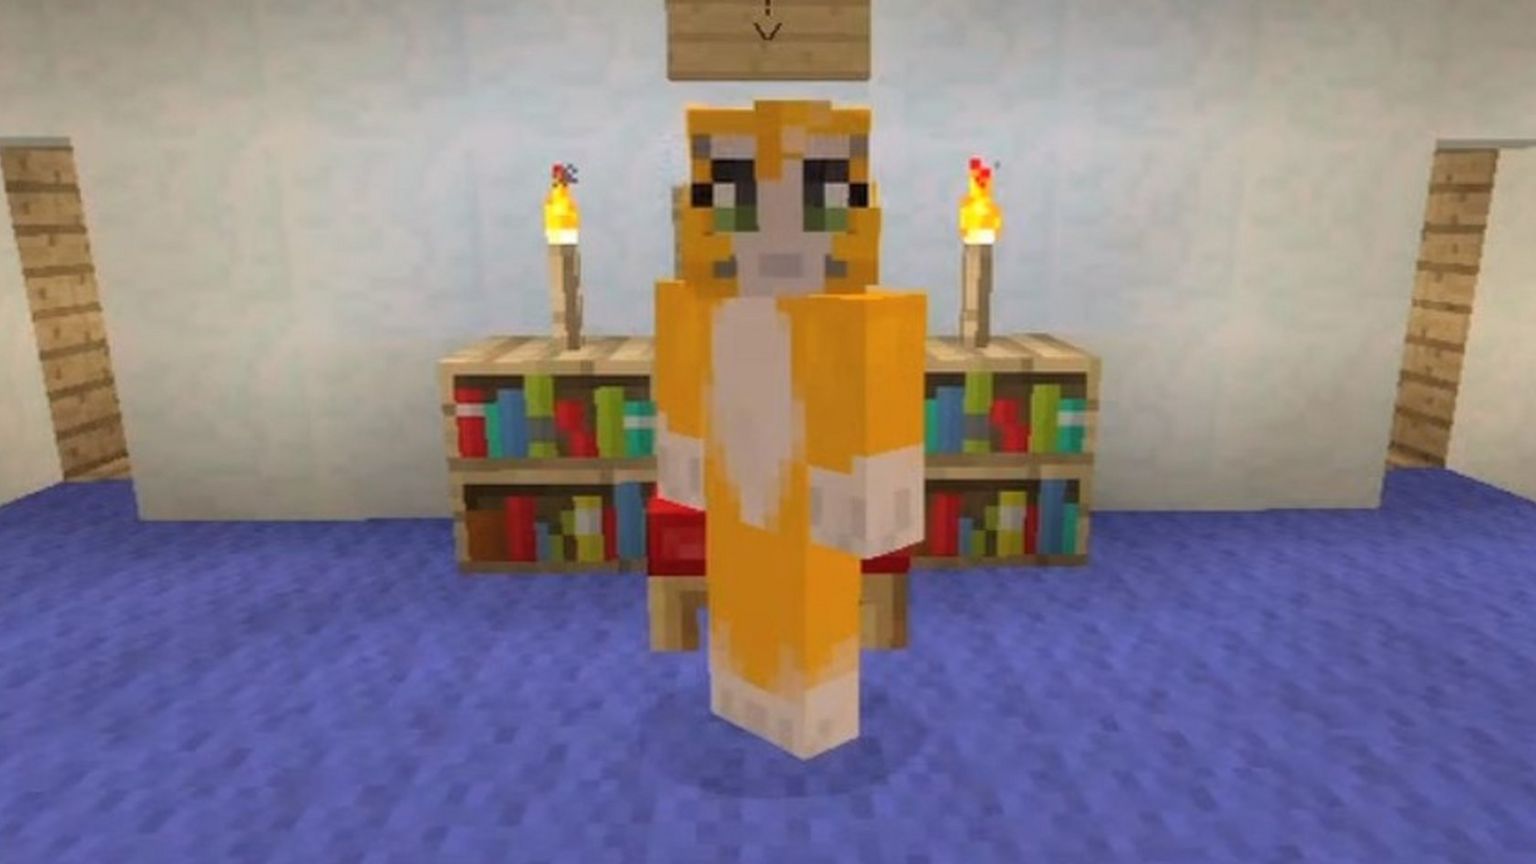 Stampy's avatar in minecraft